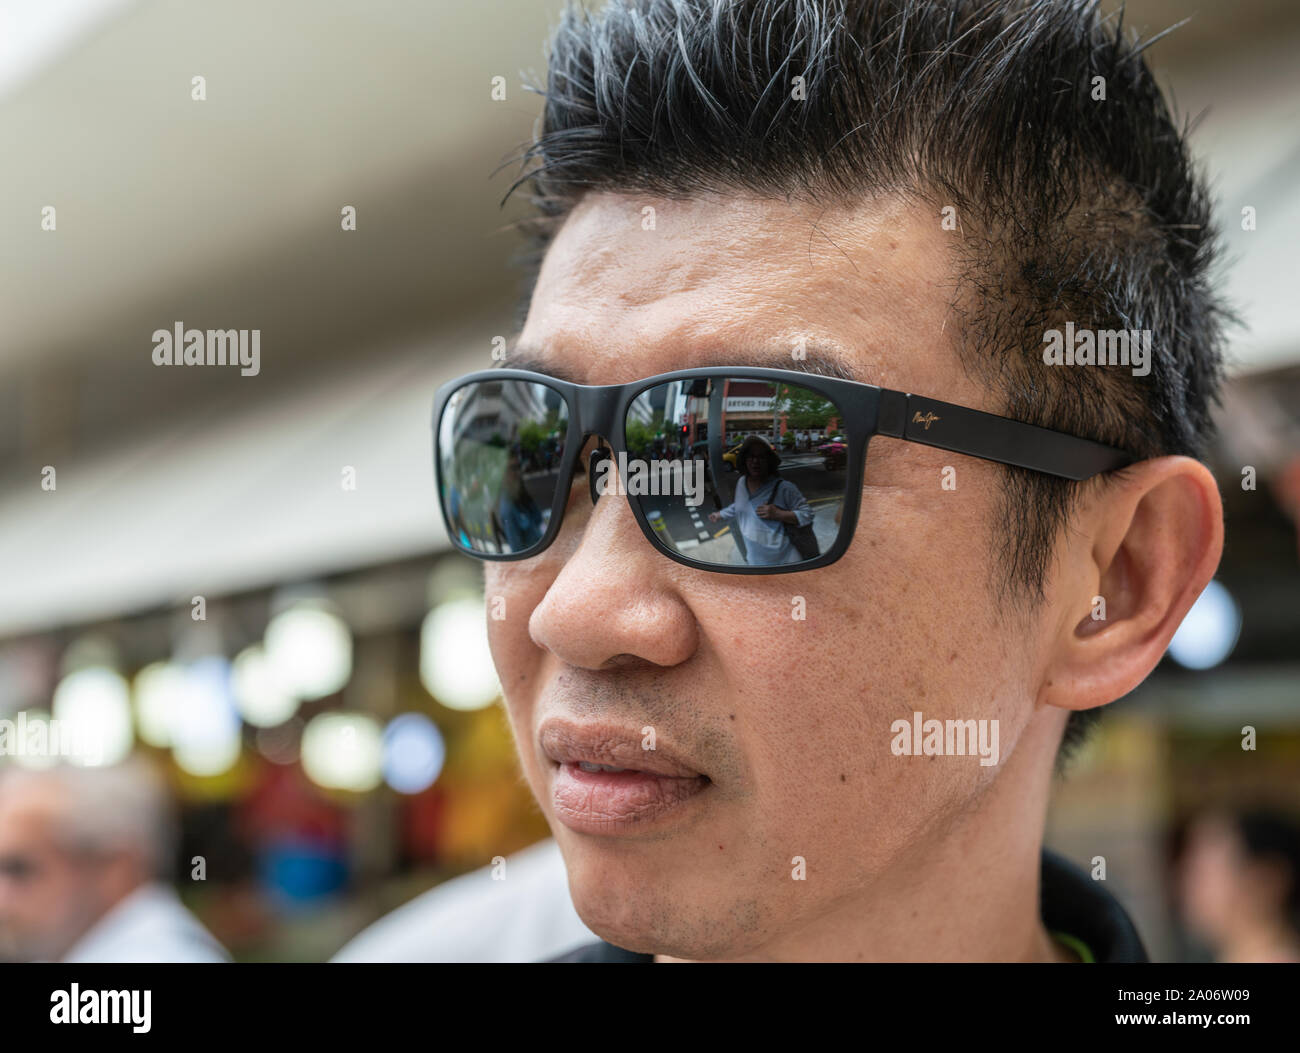 Singapore - Marzo 21, 2019: primo piano del volto del giovane. Black Maui Jim Occhiali da sole riflettono la donna e scene di strada. Foto Stock